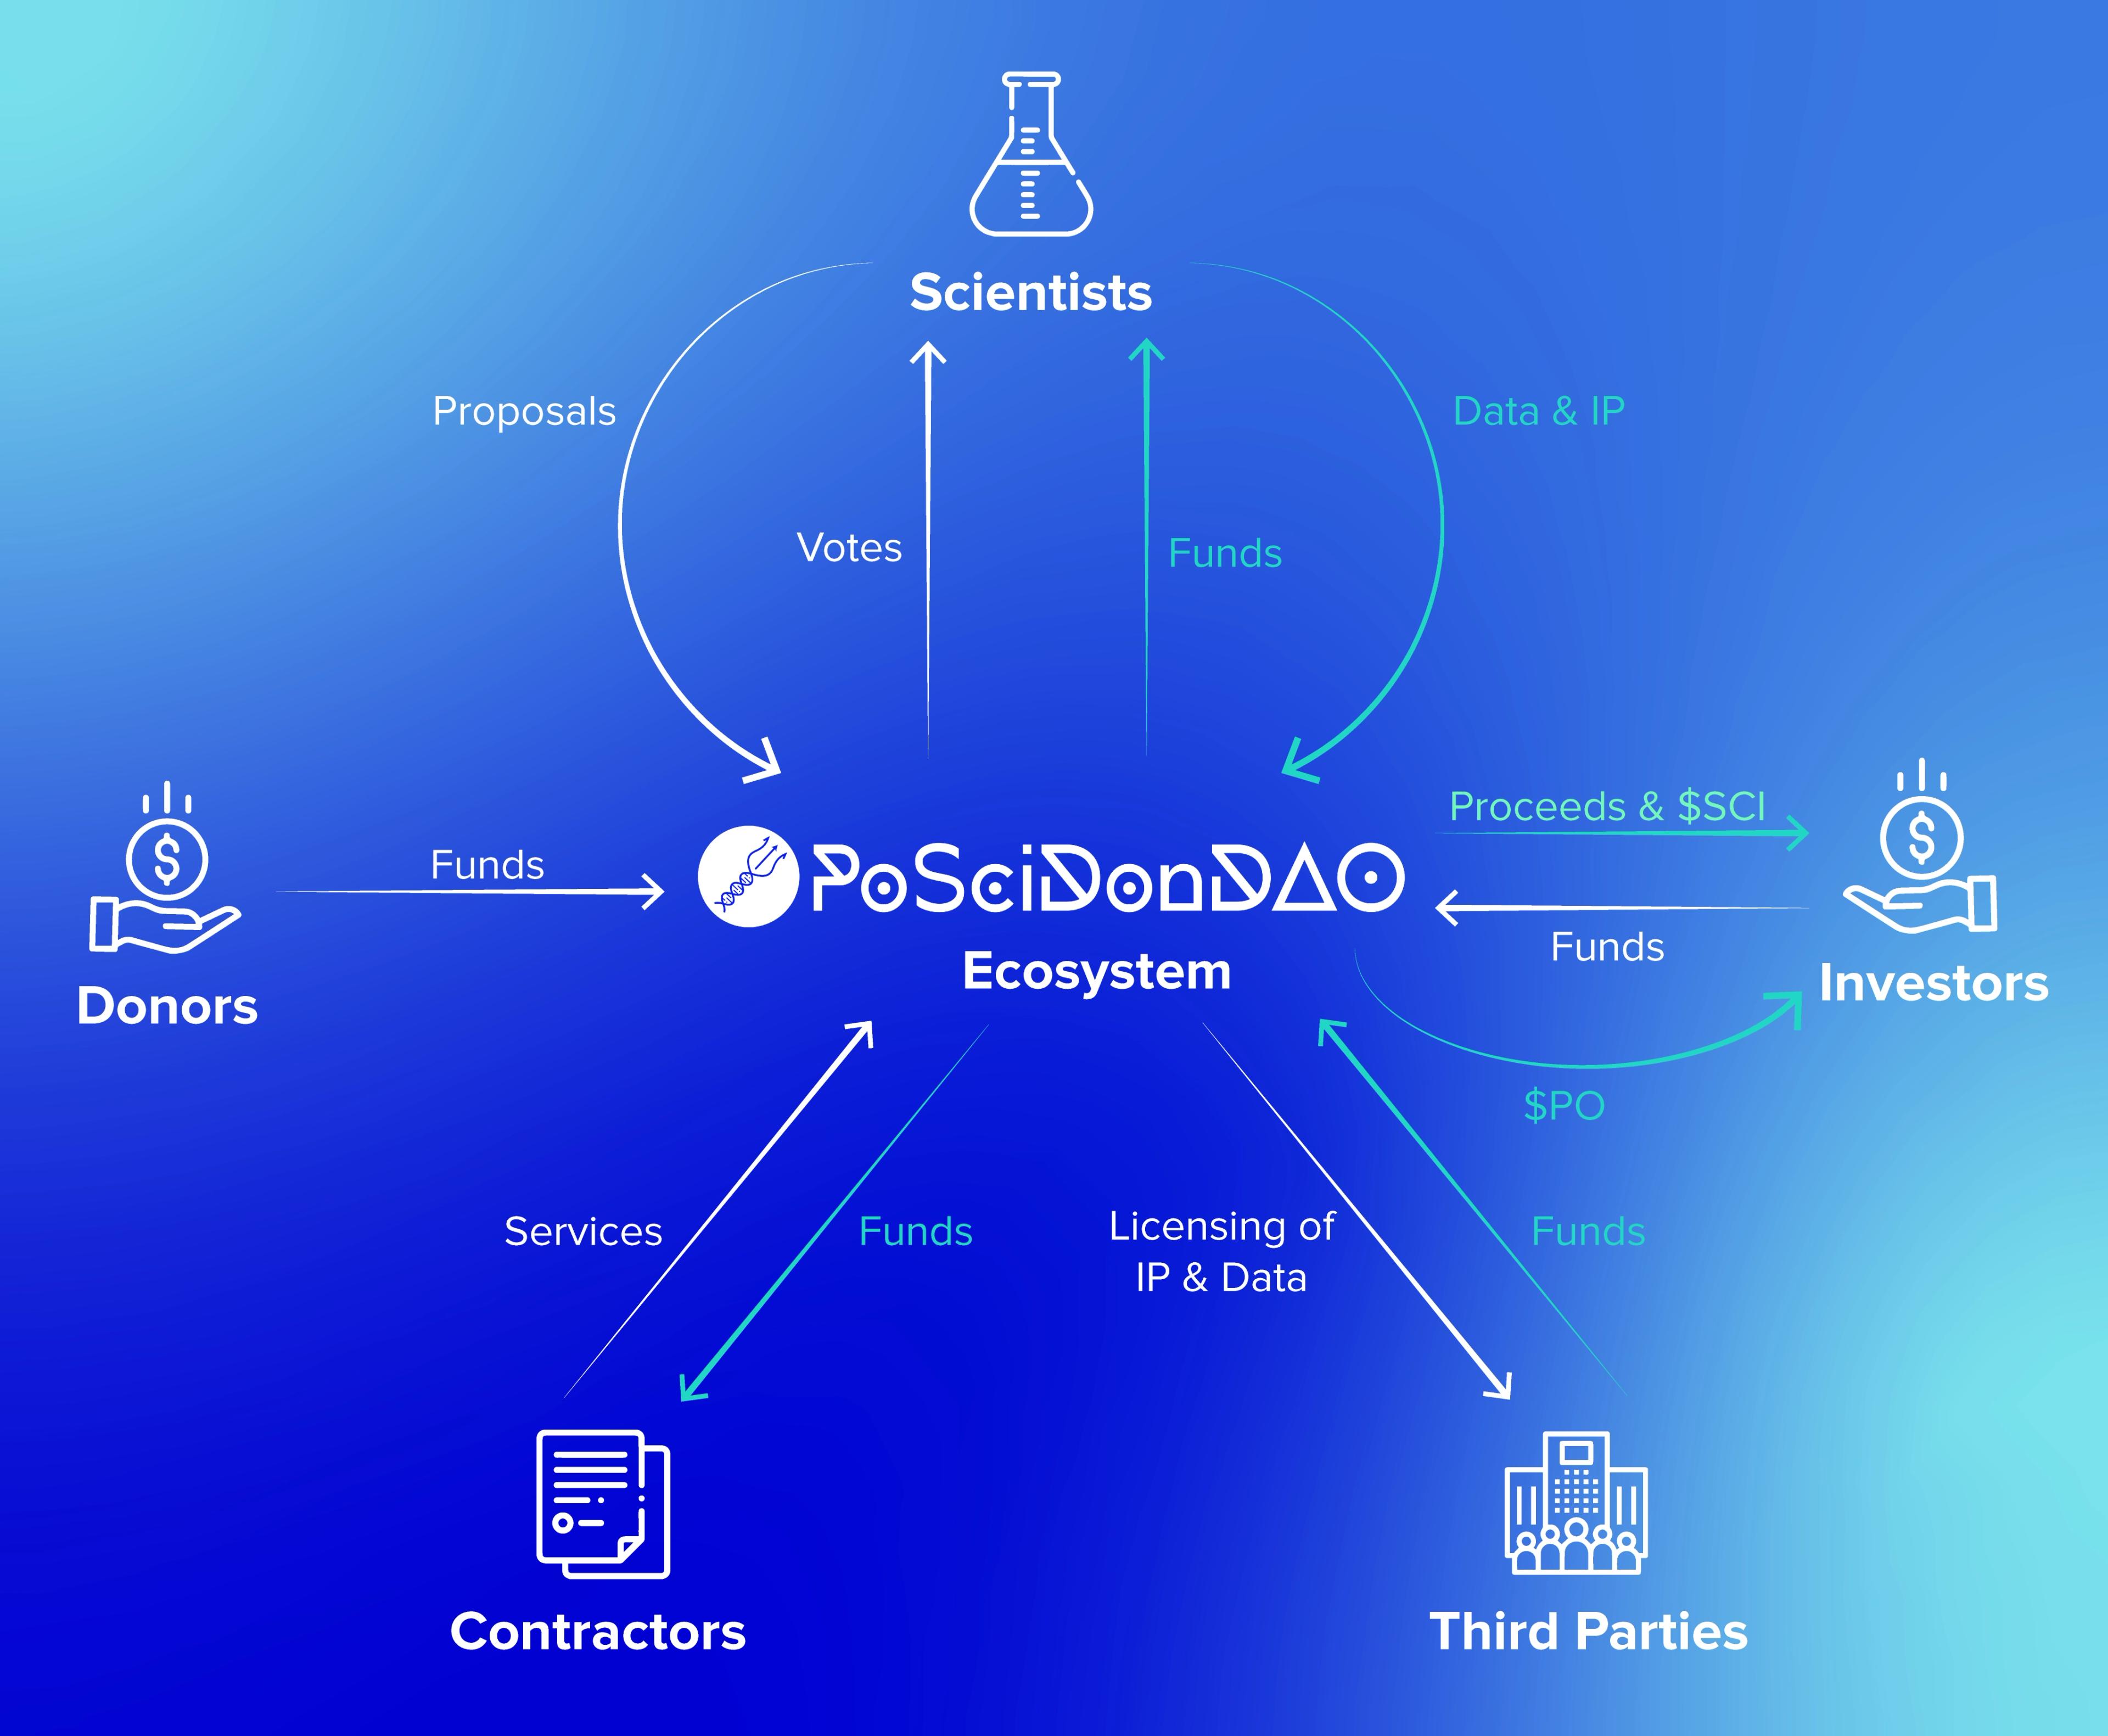 Overview of PoSciDonDAO's ecosystem